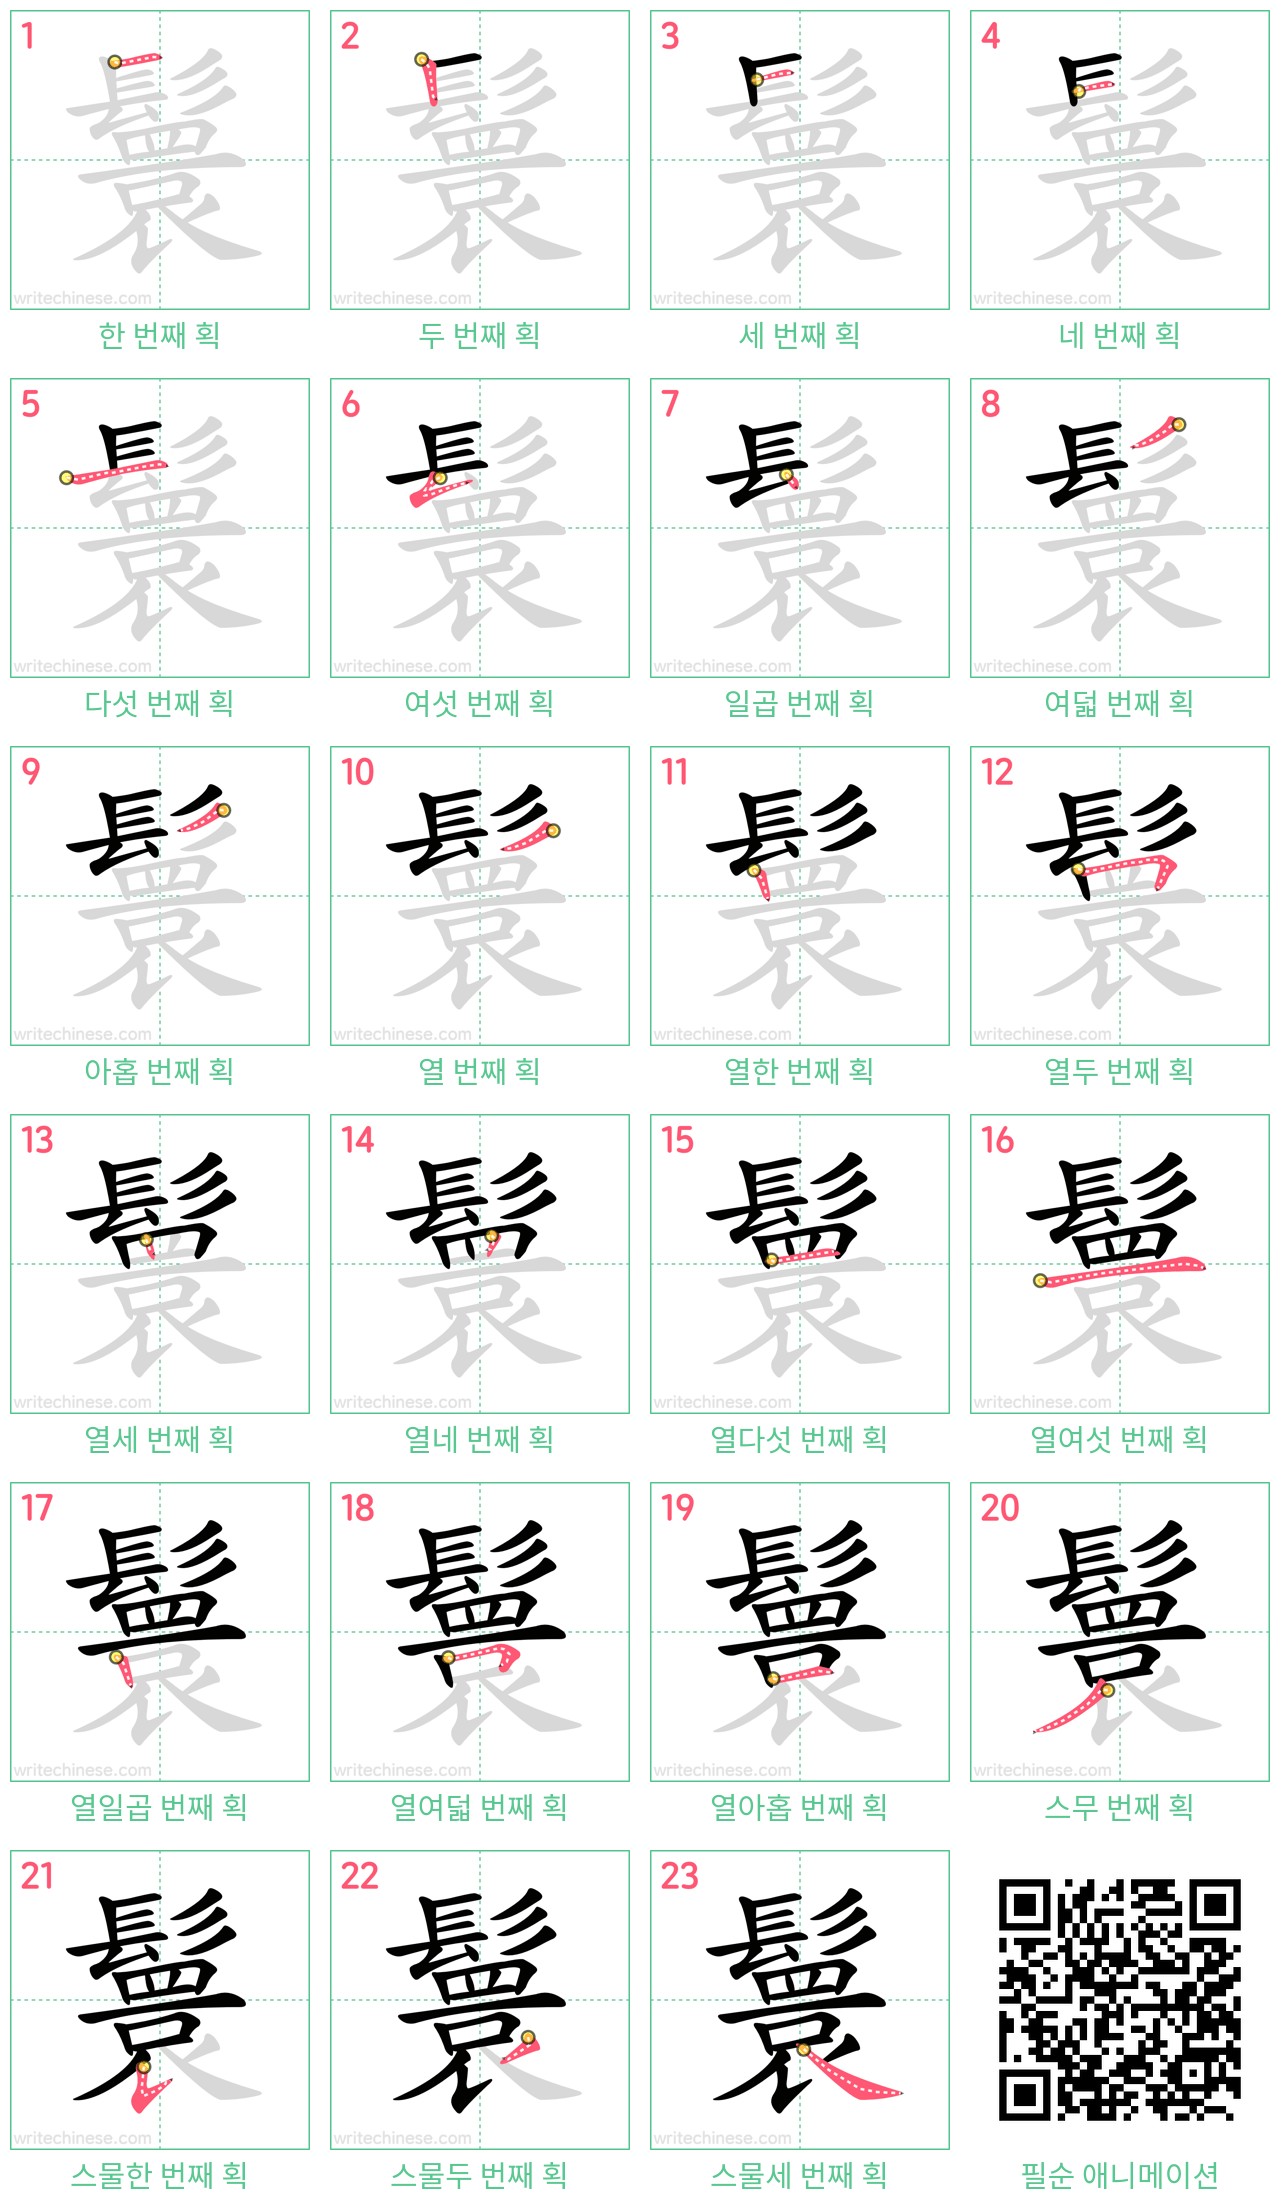 鬟 step-by-step stroke order diagrams